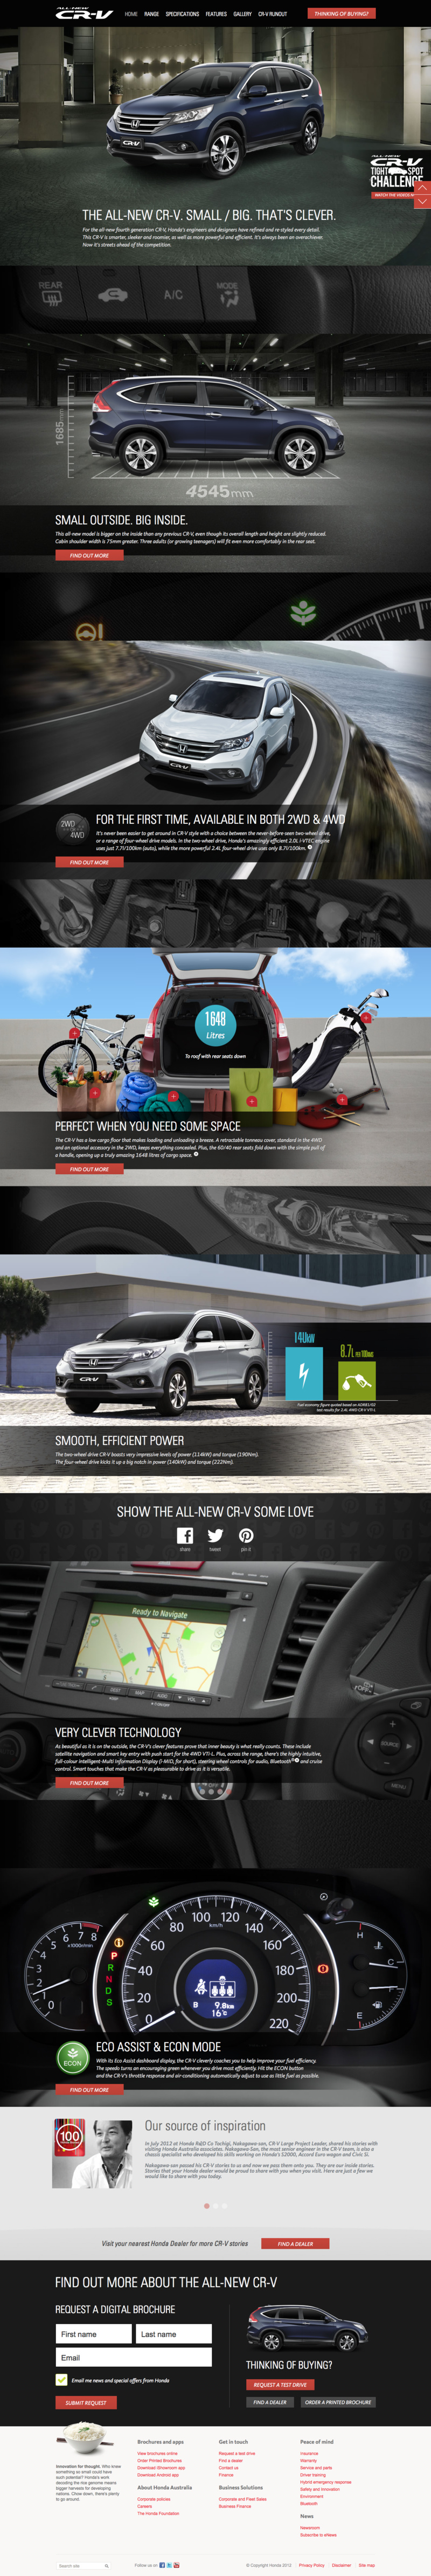 Official Honda CR-V Site